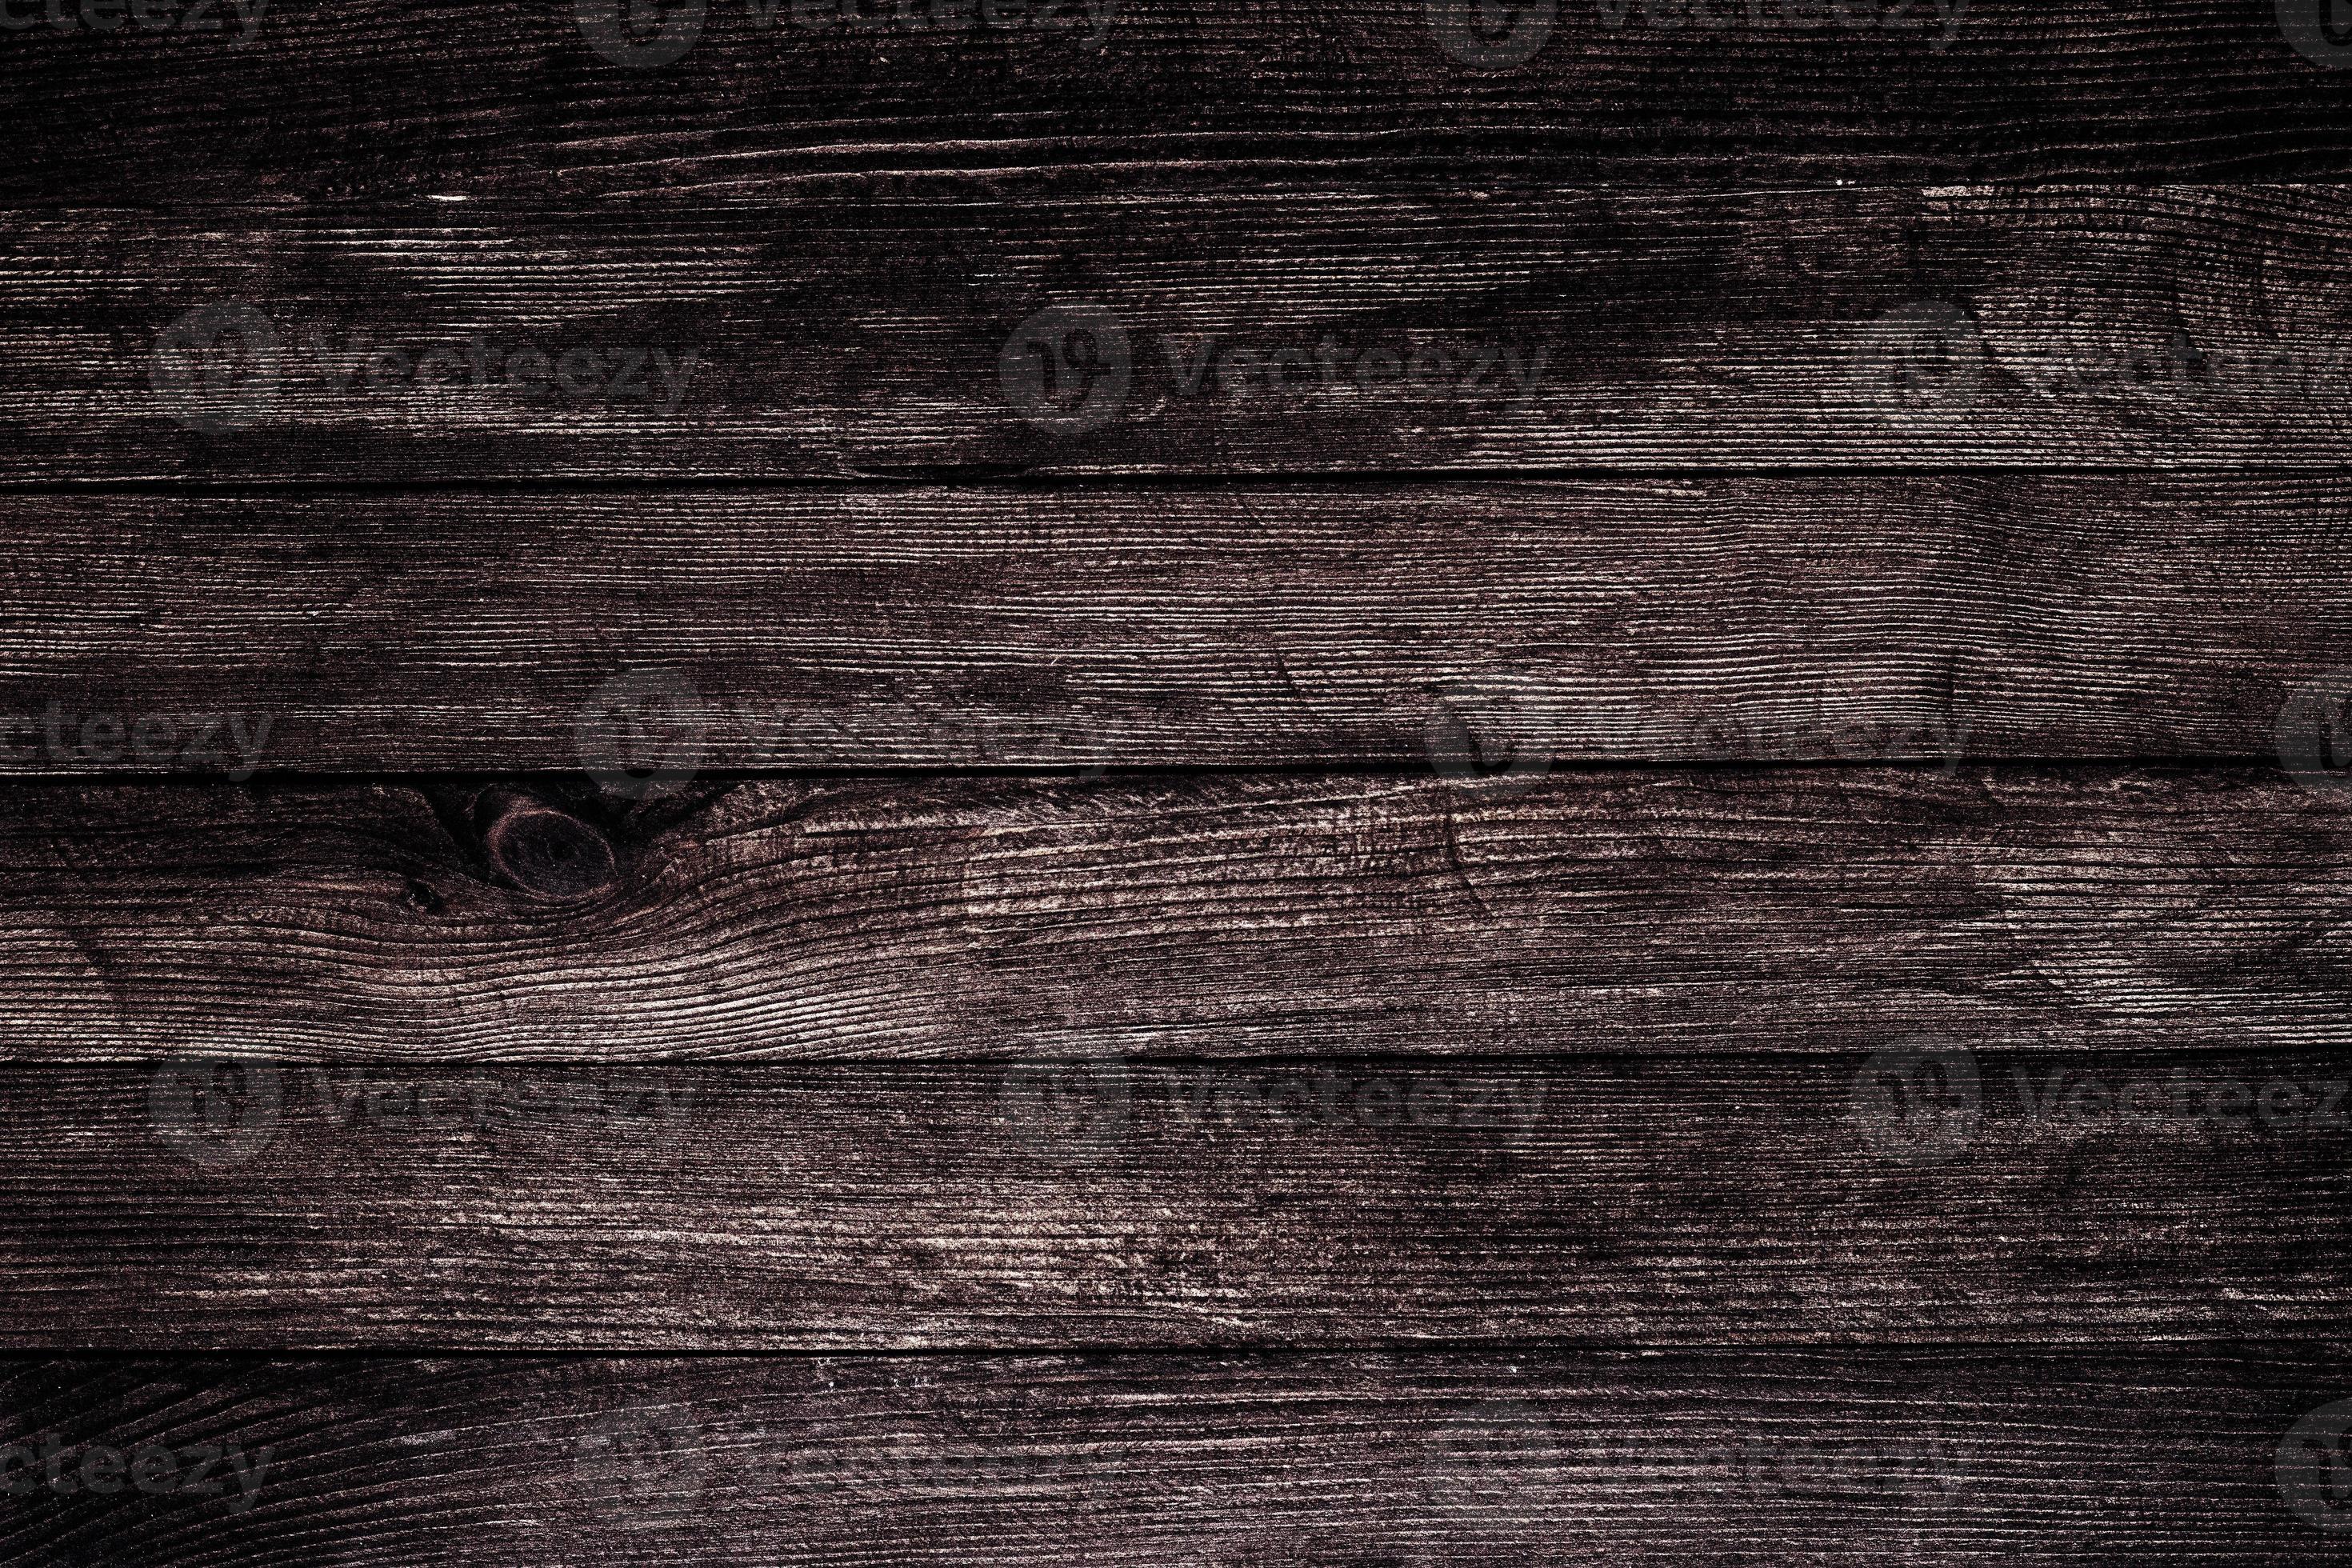 Vân gỗ cổ điển luôn tạo ra sự đẳng cấp và sang trọng cho không gian nhà bạn. Với chi tiết đục lỗ và những vân gỗ lạ mắt, bạn sẽ tìm thấy một ánh sáng đồng thời tạo vẻ cổ điển mới lạ chỉ với một tấm hình vân gỗ cổ điển.